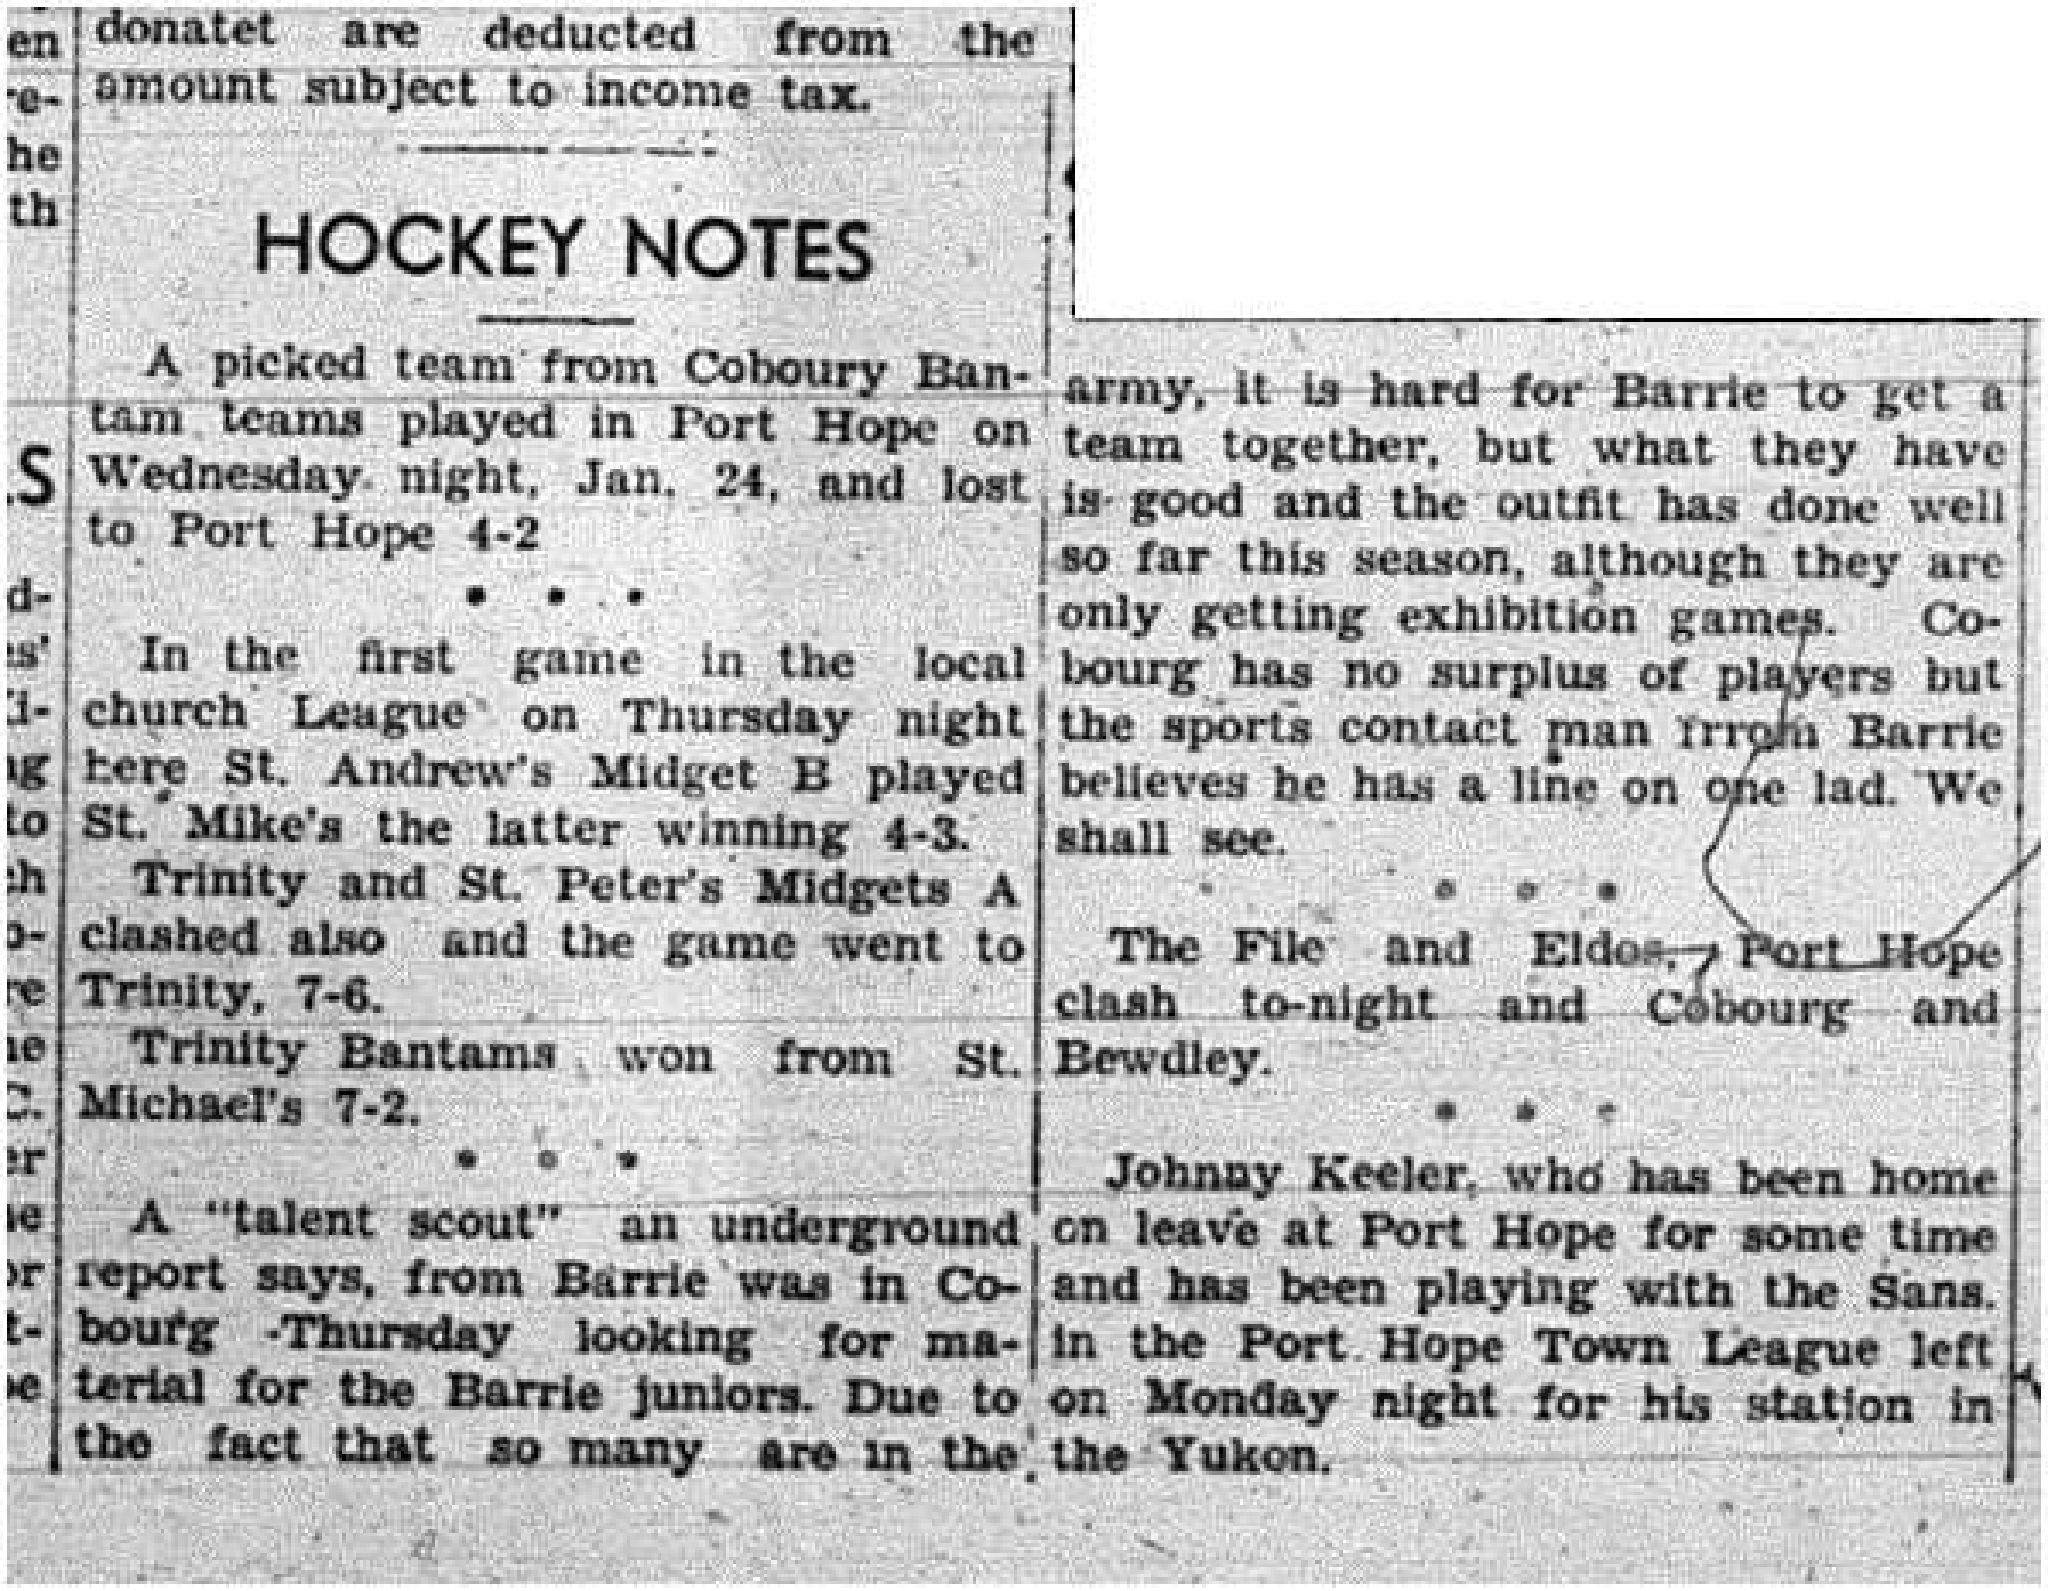 1945-02-01 Hockey - CCHL